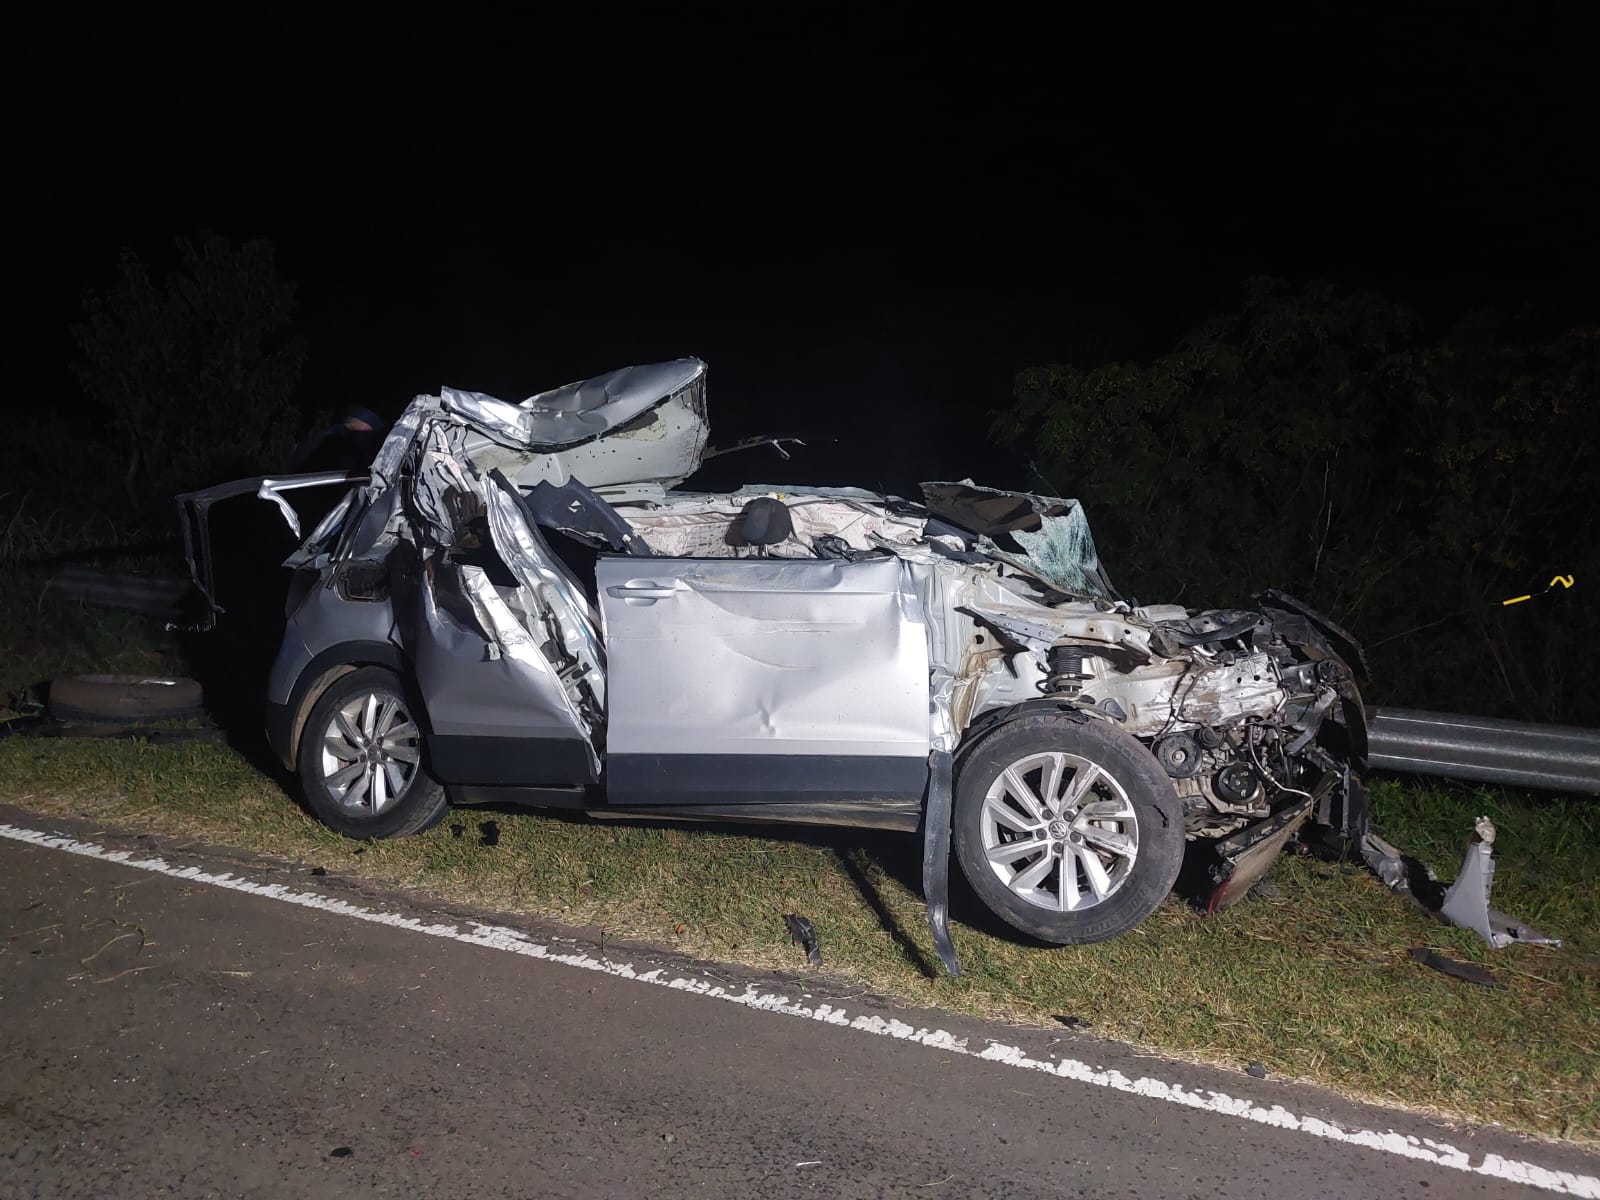 Un automóvil chocó desde atrás a un camión en la Ruta 12 km 616, el auto dió varios tumbos pero afortunadamente no hubo lesionados graves.